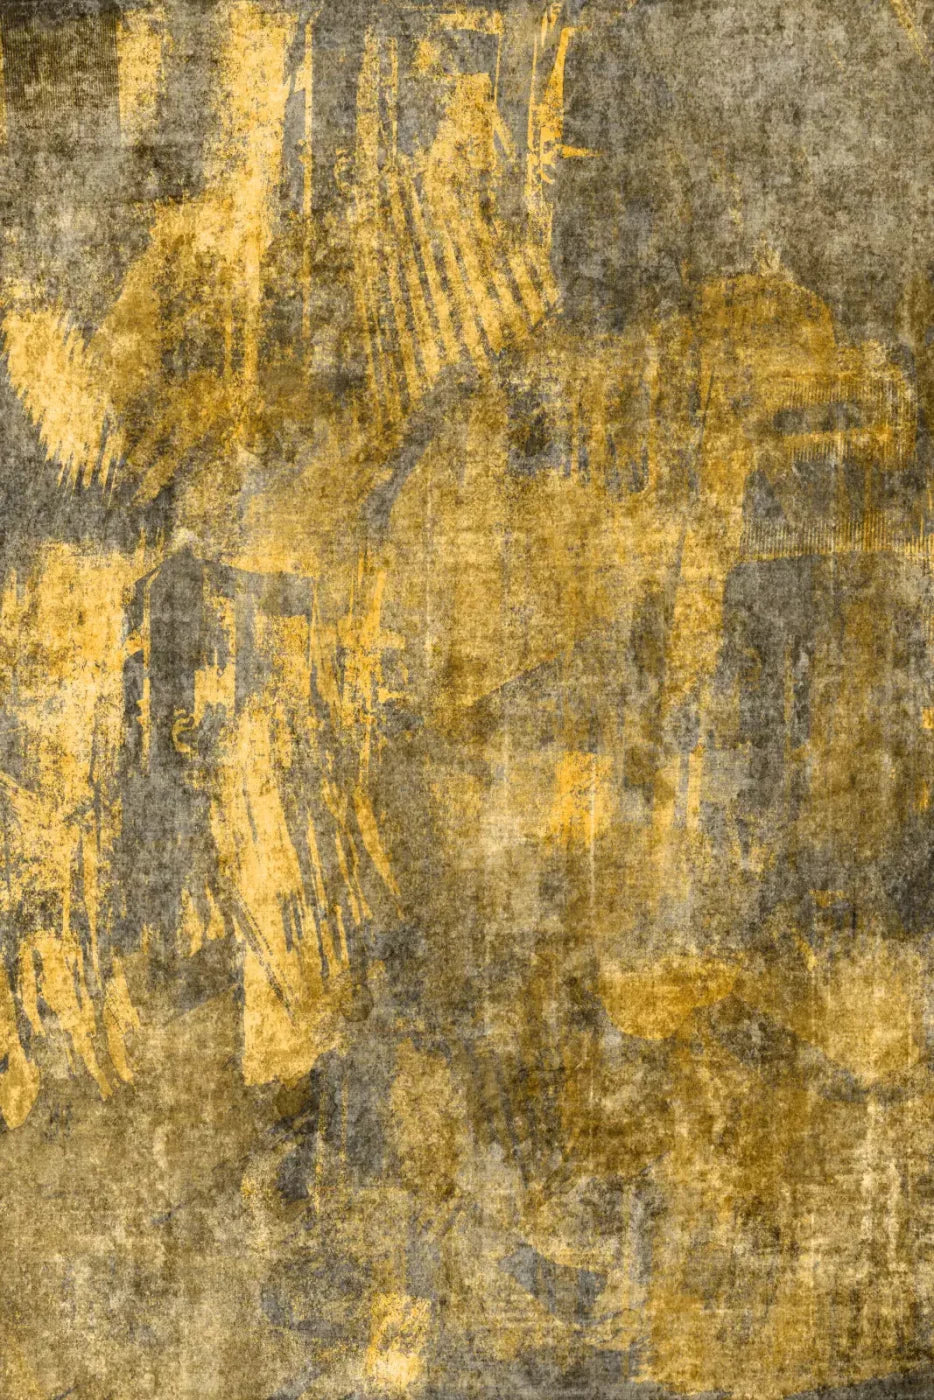 Metro Golden 4X5 Rubbermat Floor ( 48 X 60 Inch ) Backdrop